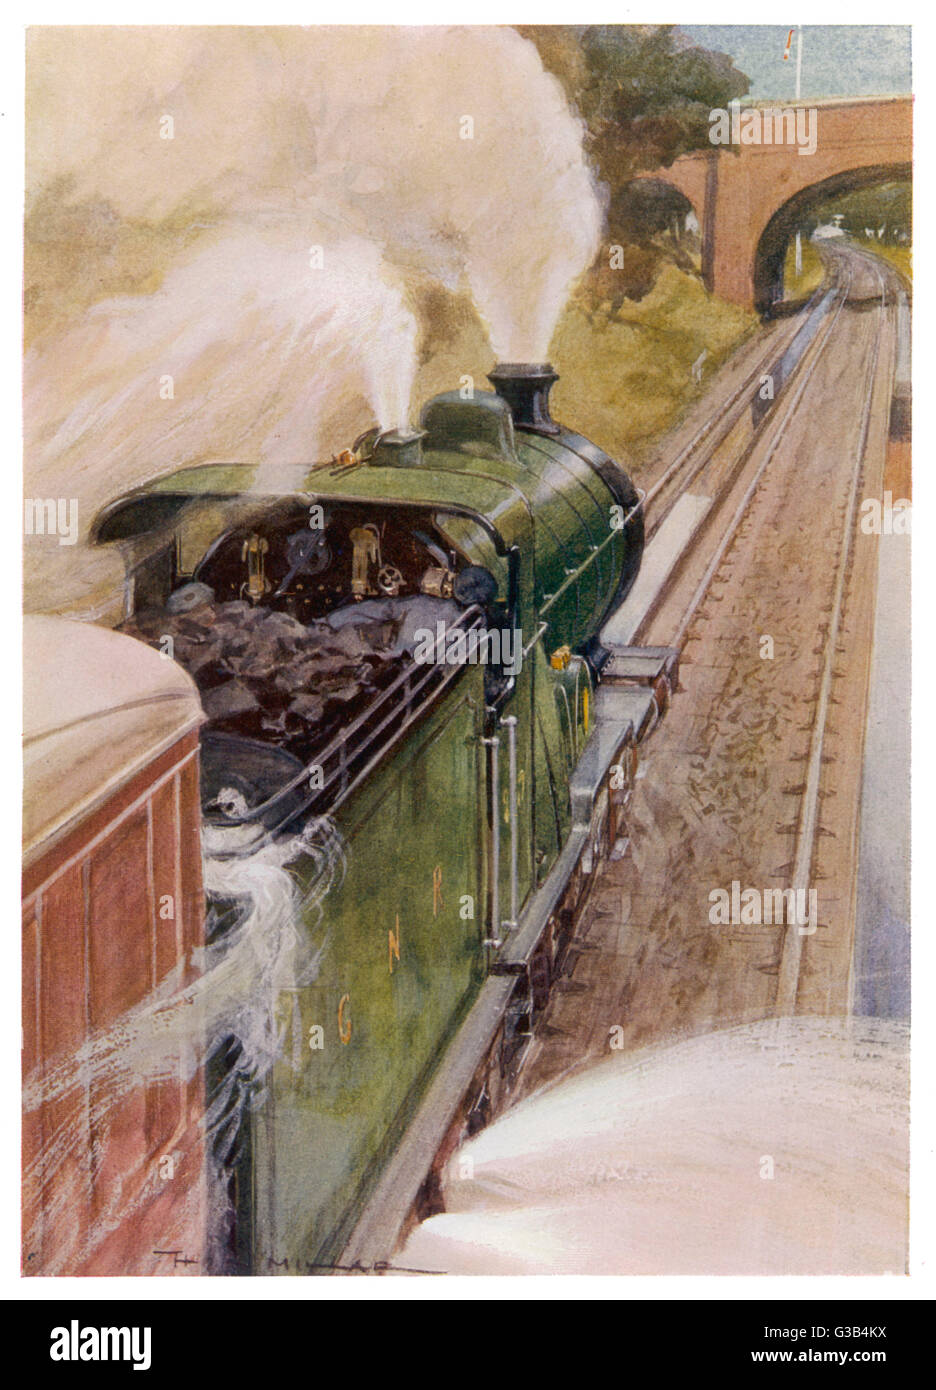 Eine Lokomotive für die Great Northern Railway unter Wasser - ein wesentlicher Bestandteil der Dampfmaschine Betrieb Datum: 1913 Stockfoto